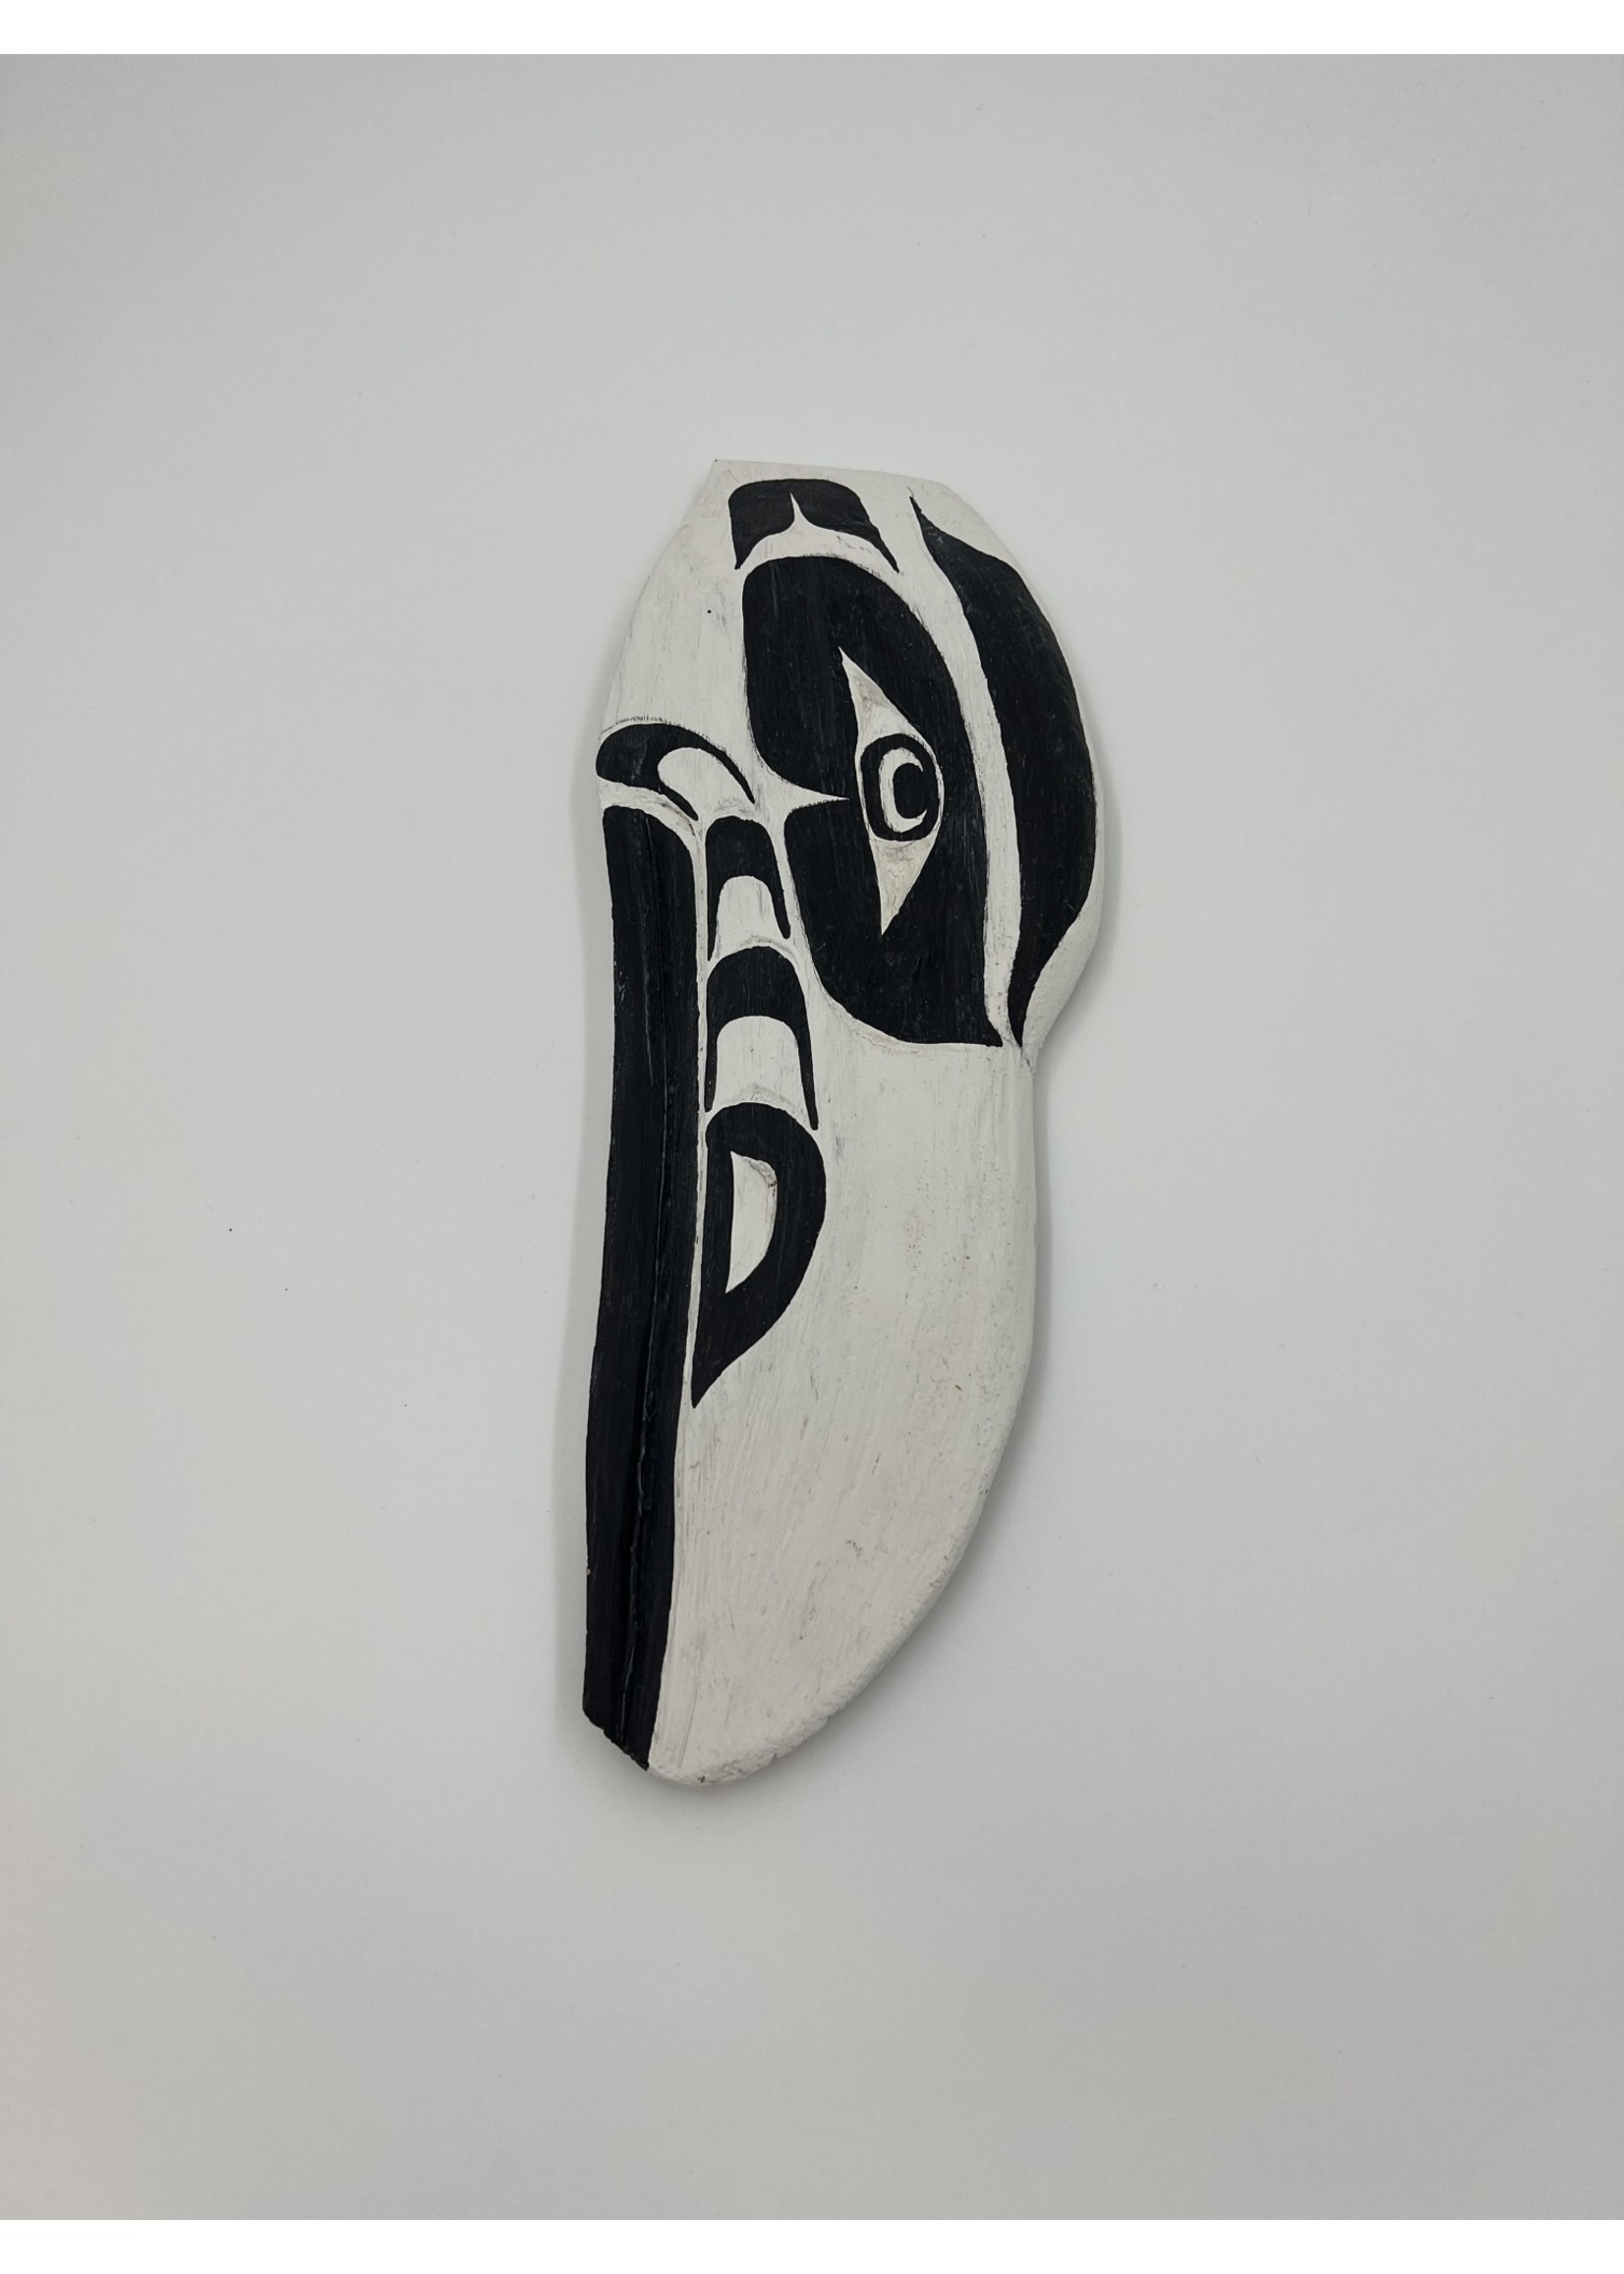 Cecil Dawson White Raven Of Nanaimo Carving